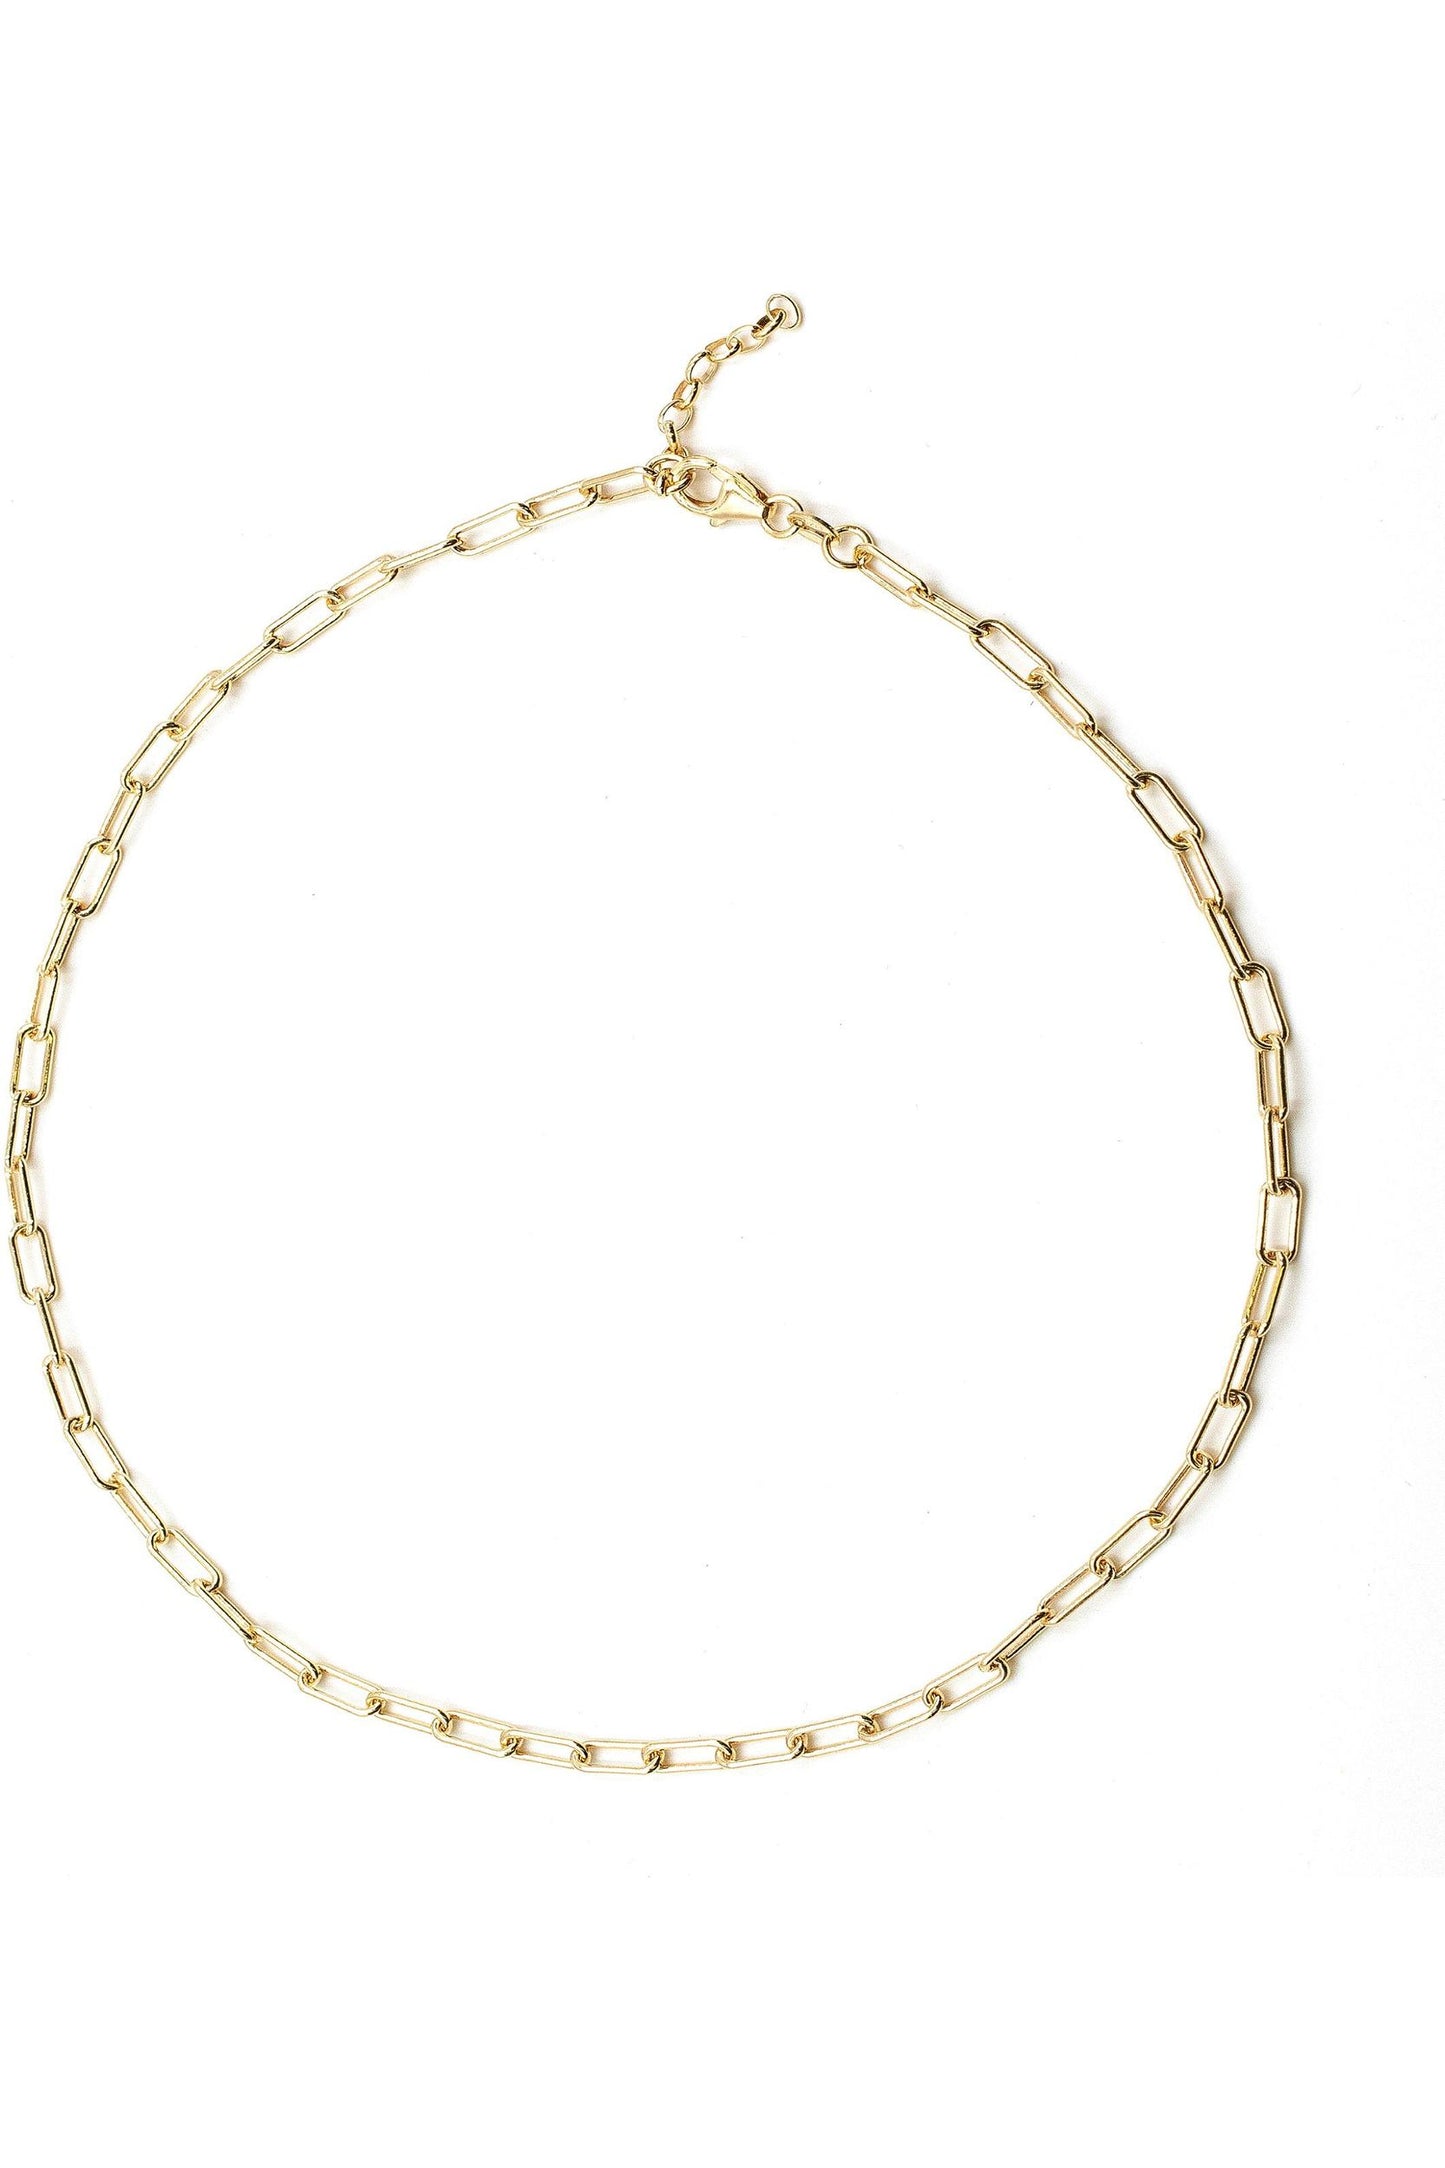 Paris link necklace